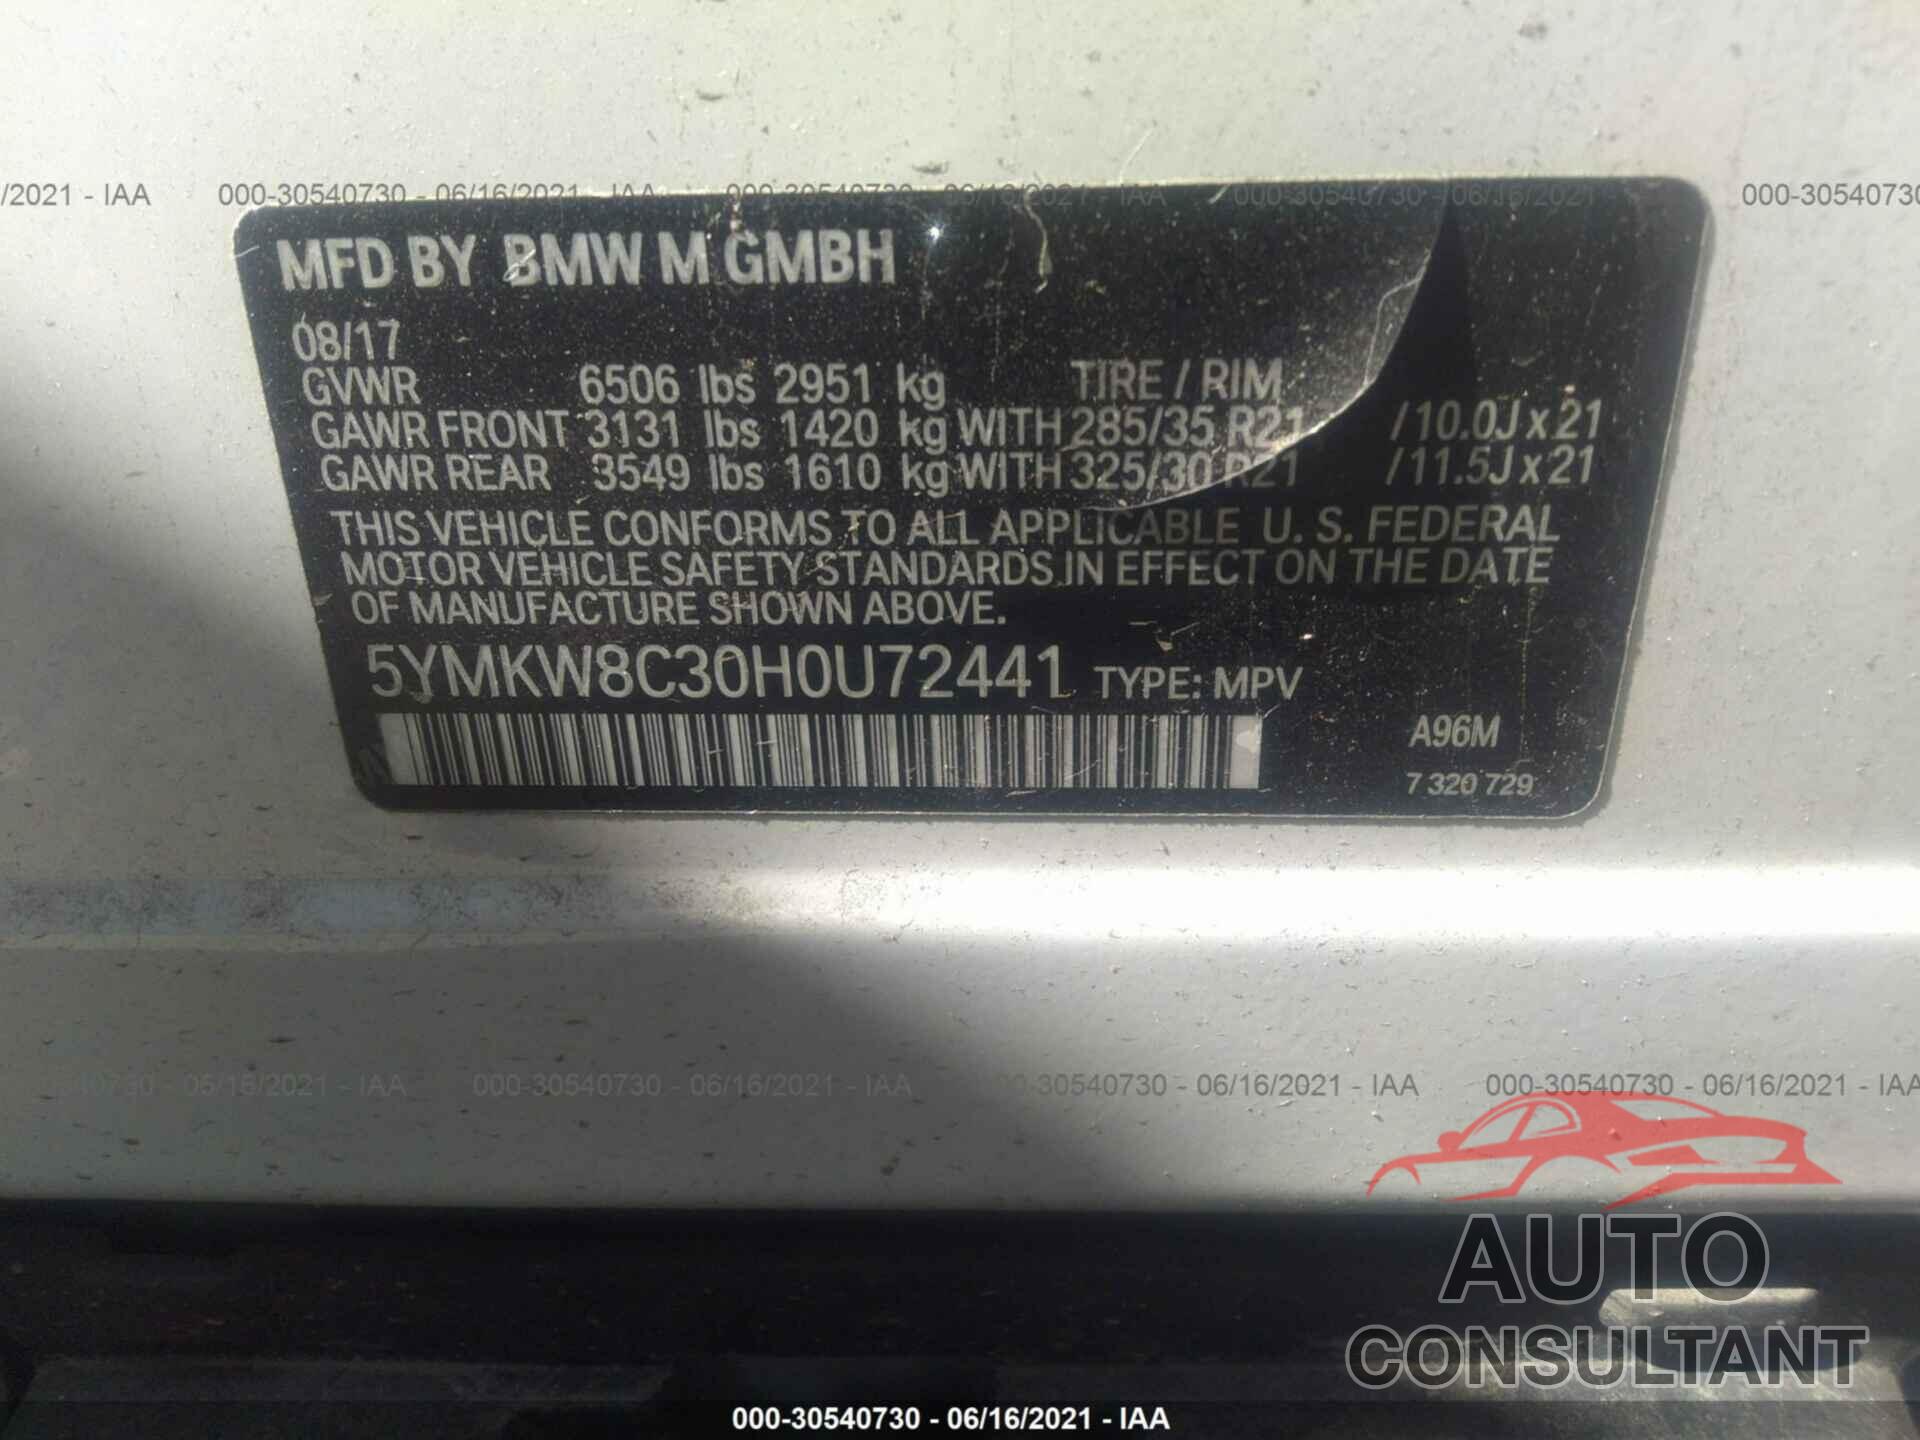 BMW X6 M 2017 - 5YMKW8C30H0U72441